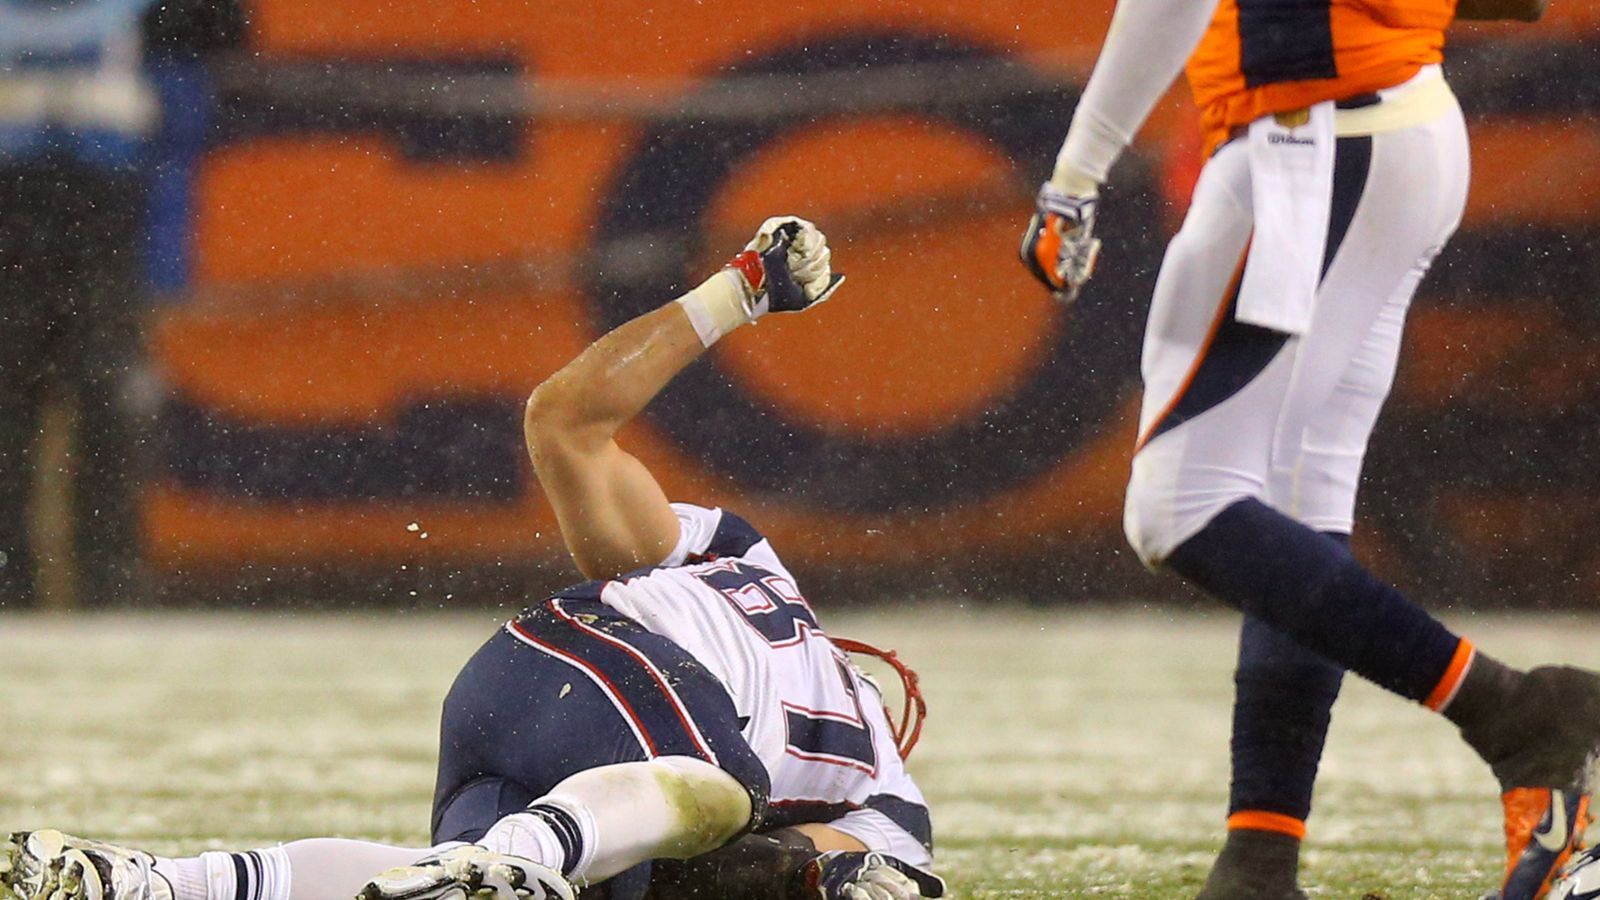 
                <strong>2015: Kniestauchung</strong><br>
                In den Spielzeiten 2013/14 und 2014/15 bleibt Gronkowski verletzungsfrei und gewinnt mit den New England Patriots 2015 den Super Bowl. In Week 12 der Saison 2015/16 verstaucht sich Gronk im Spiel bei den Denver Broncos das Knie und fällt eine Woche aus.
              